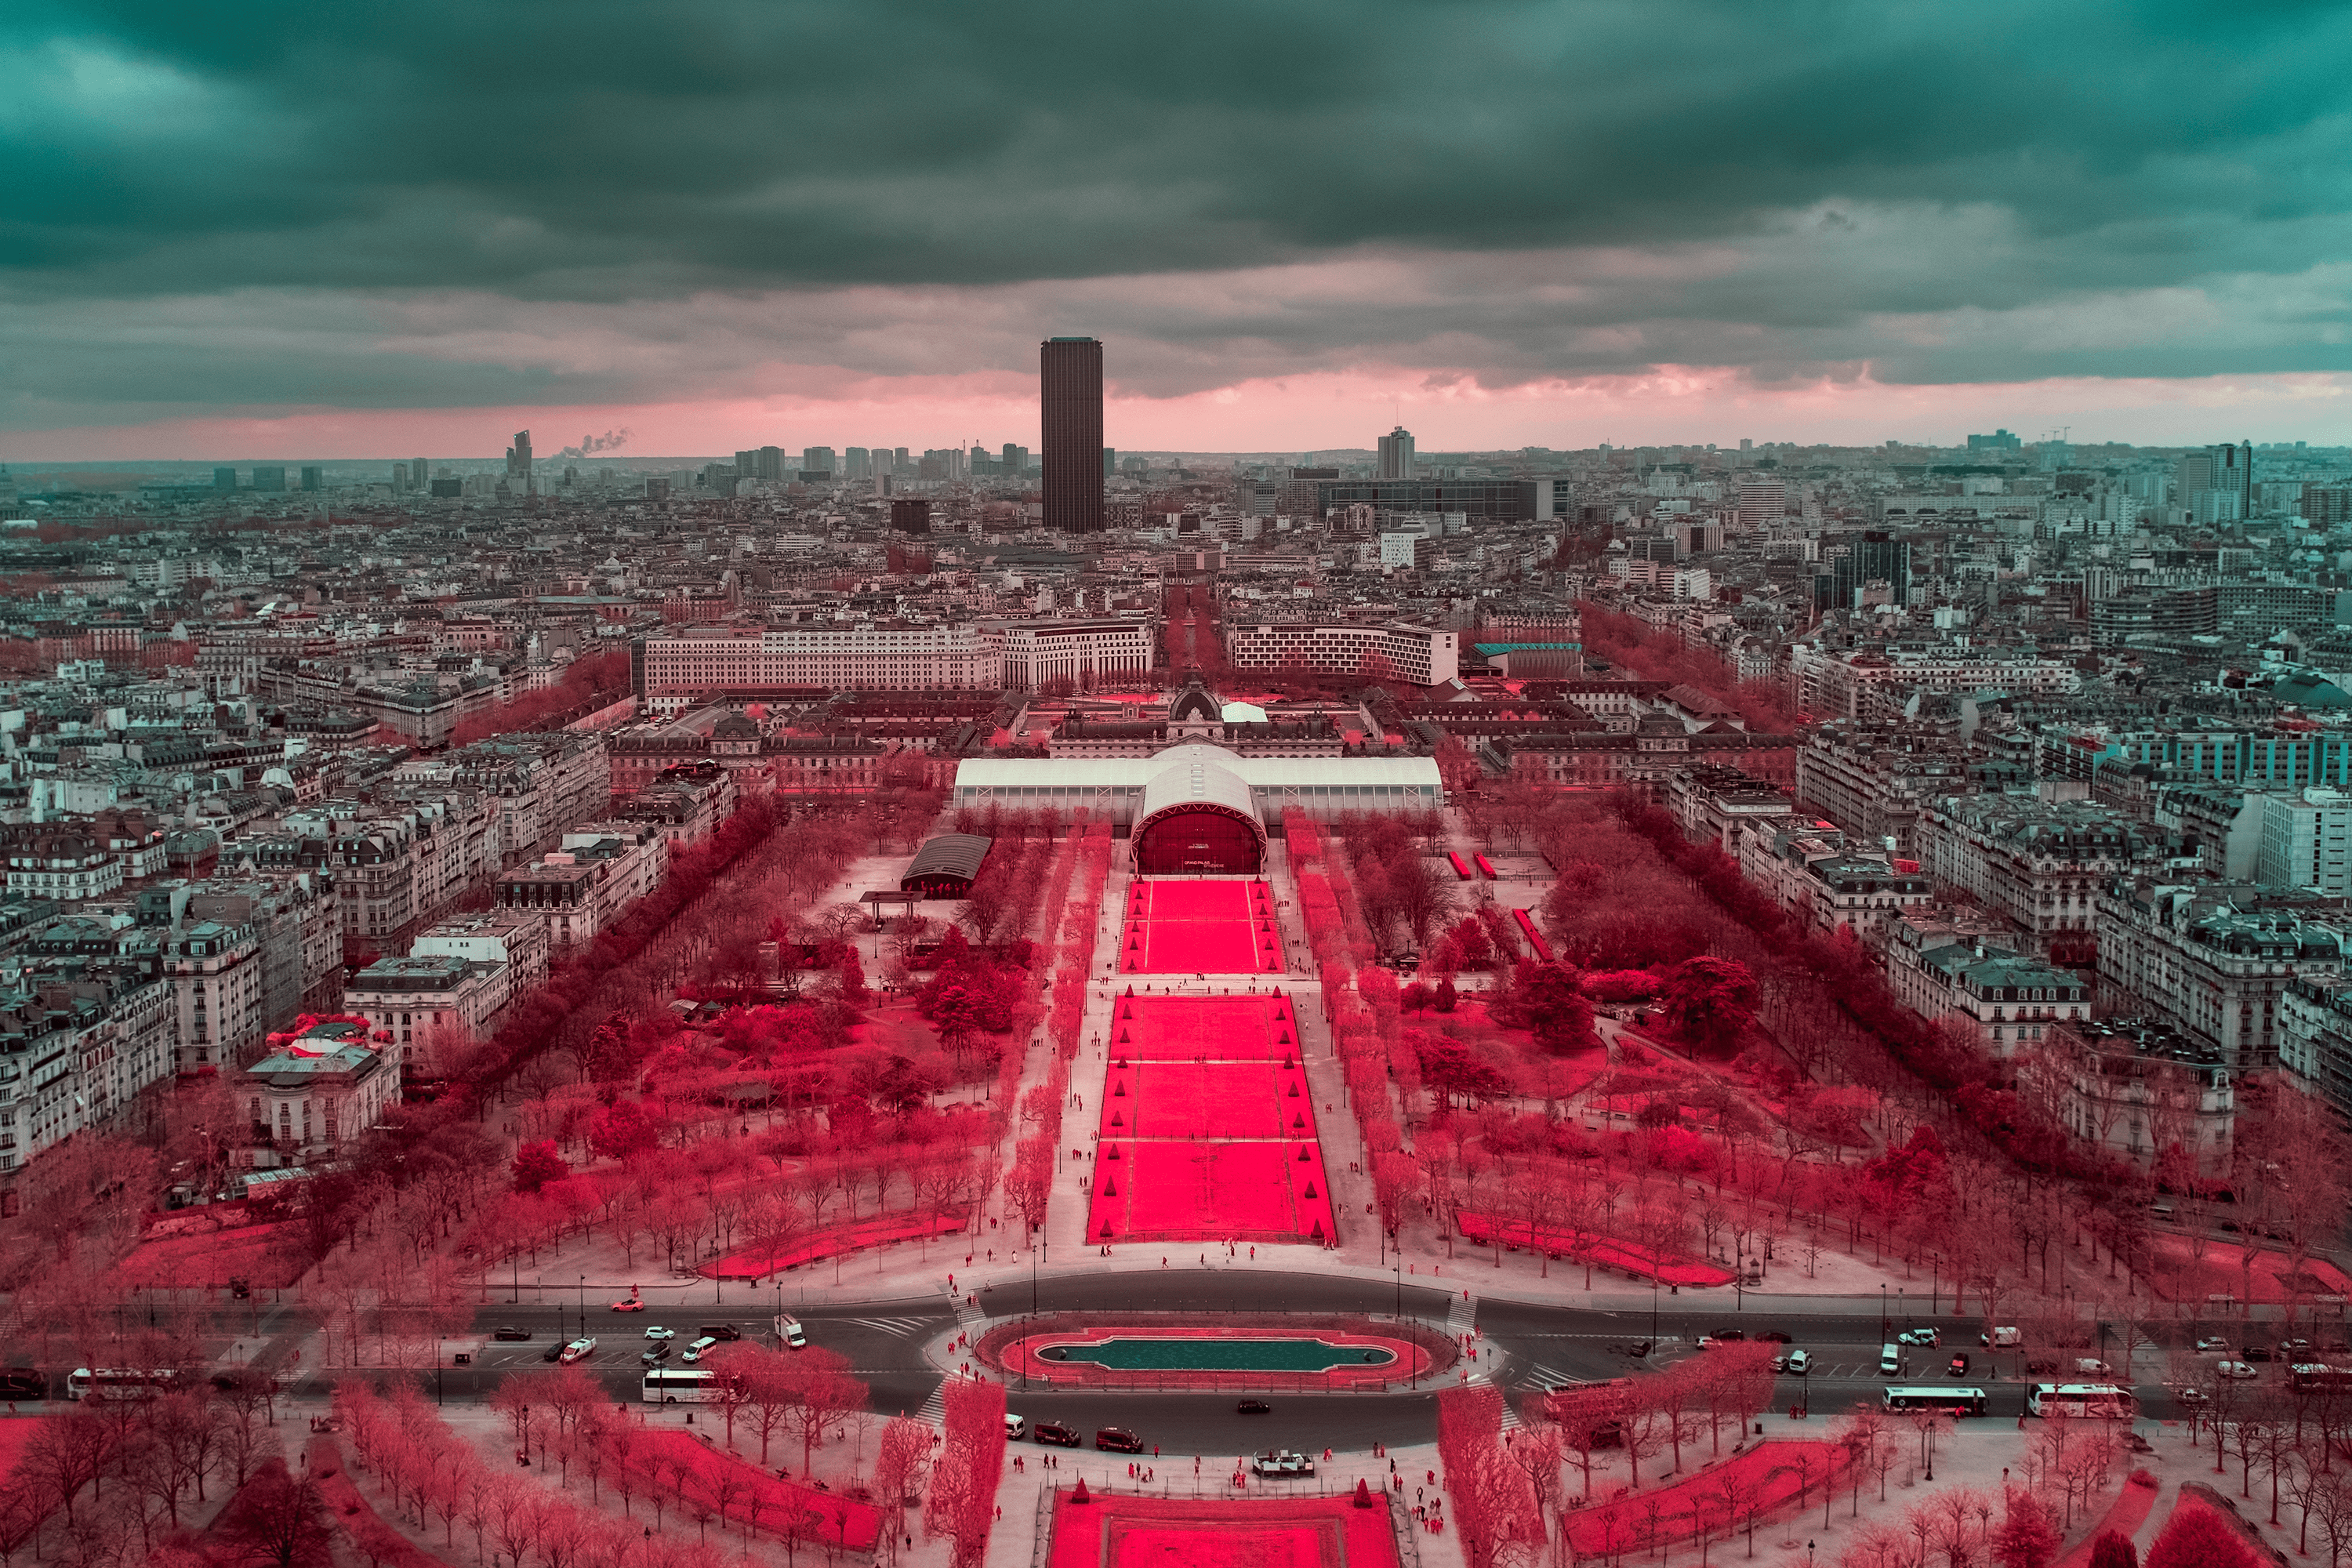 The Red Carpet of Paris